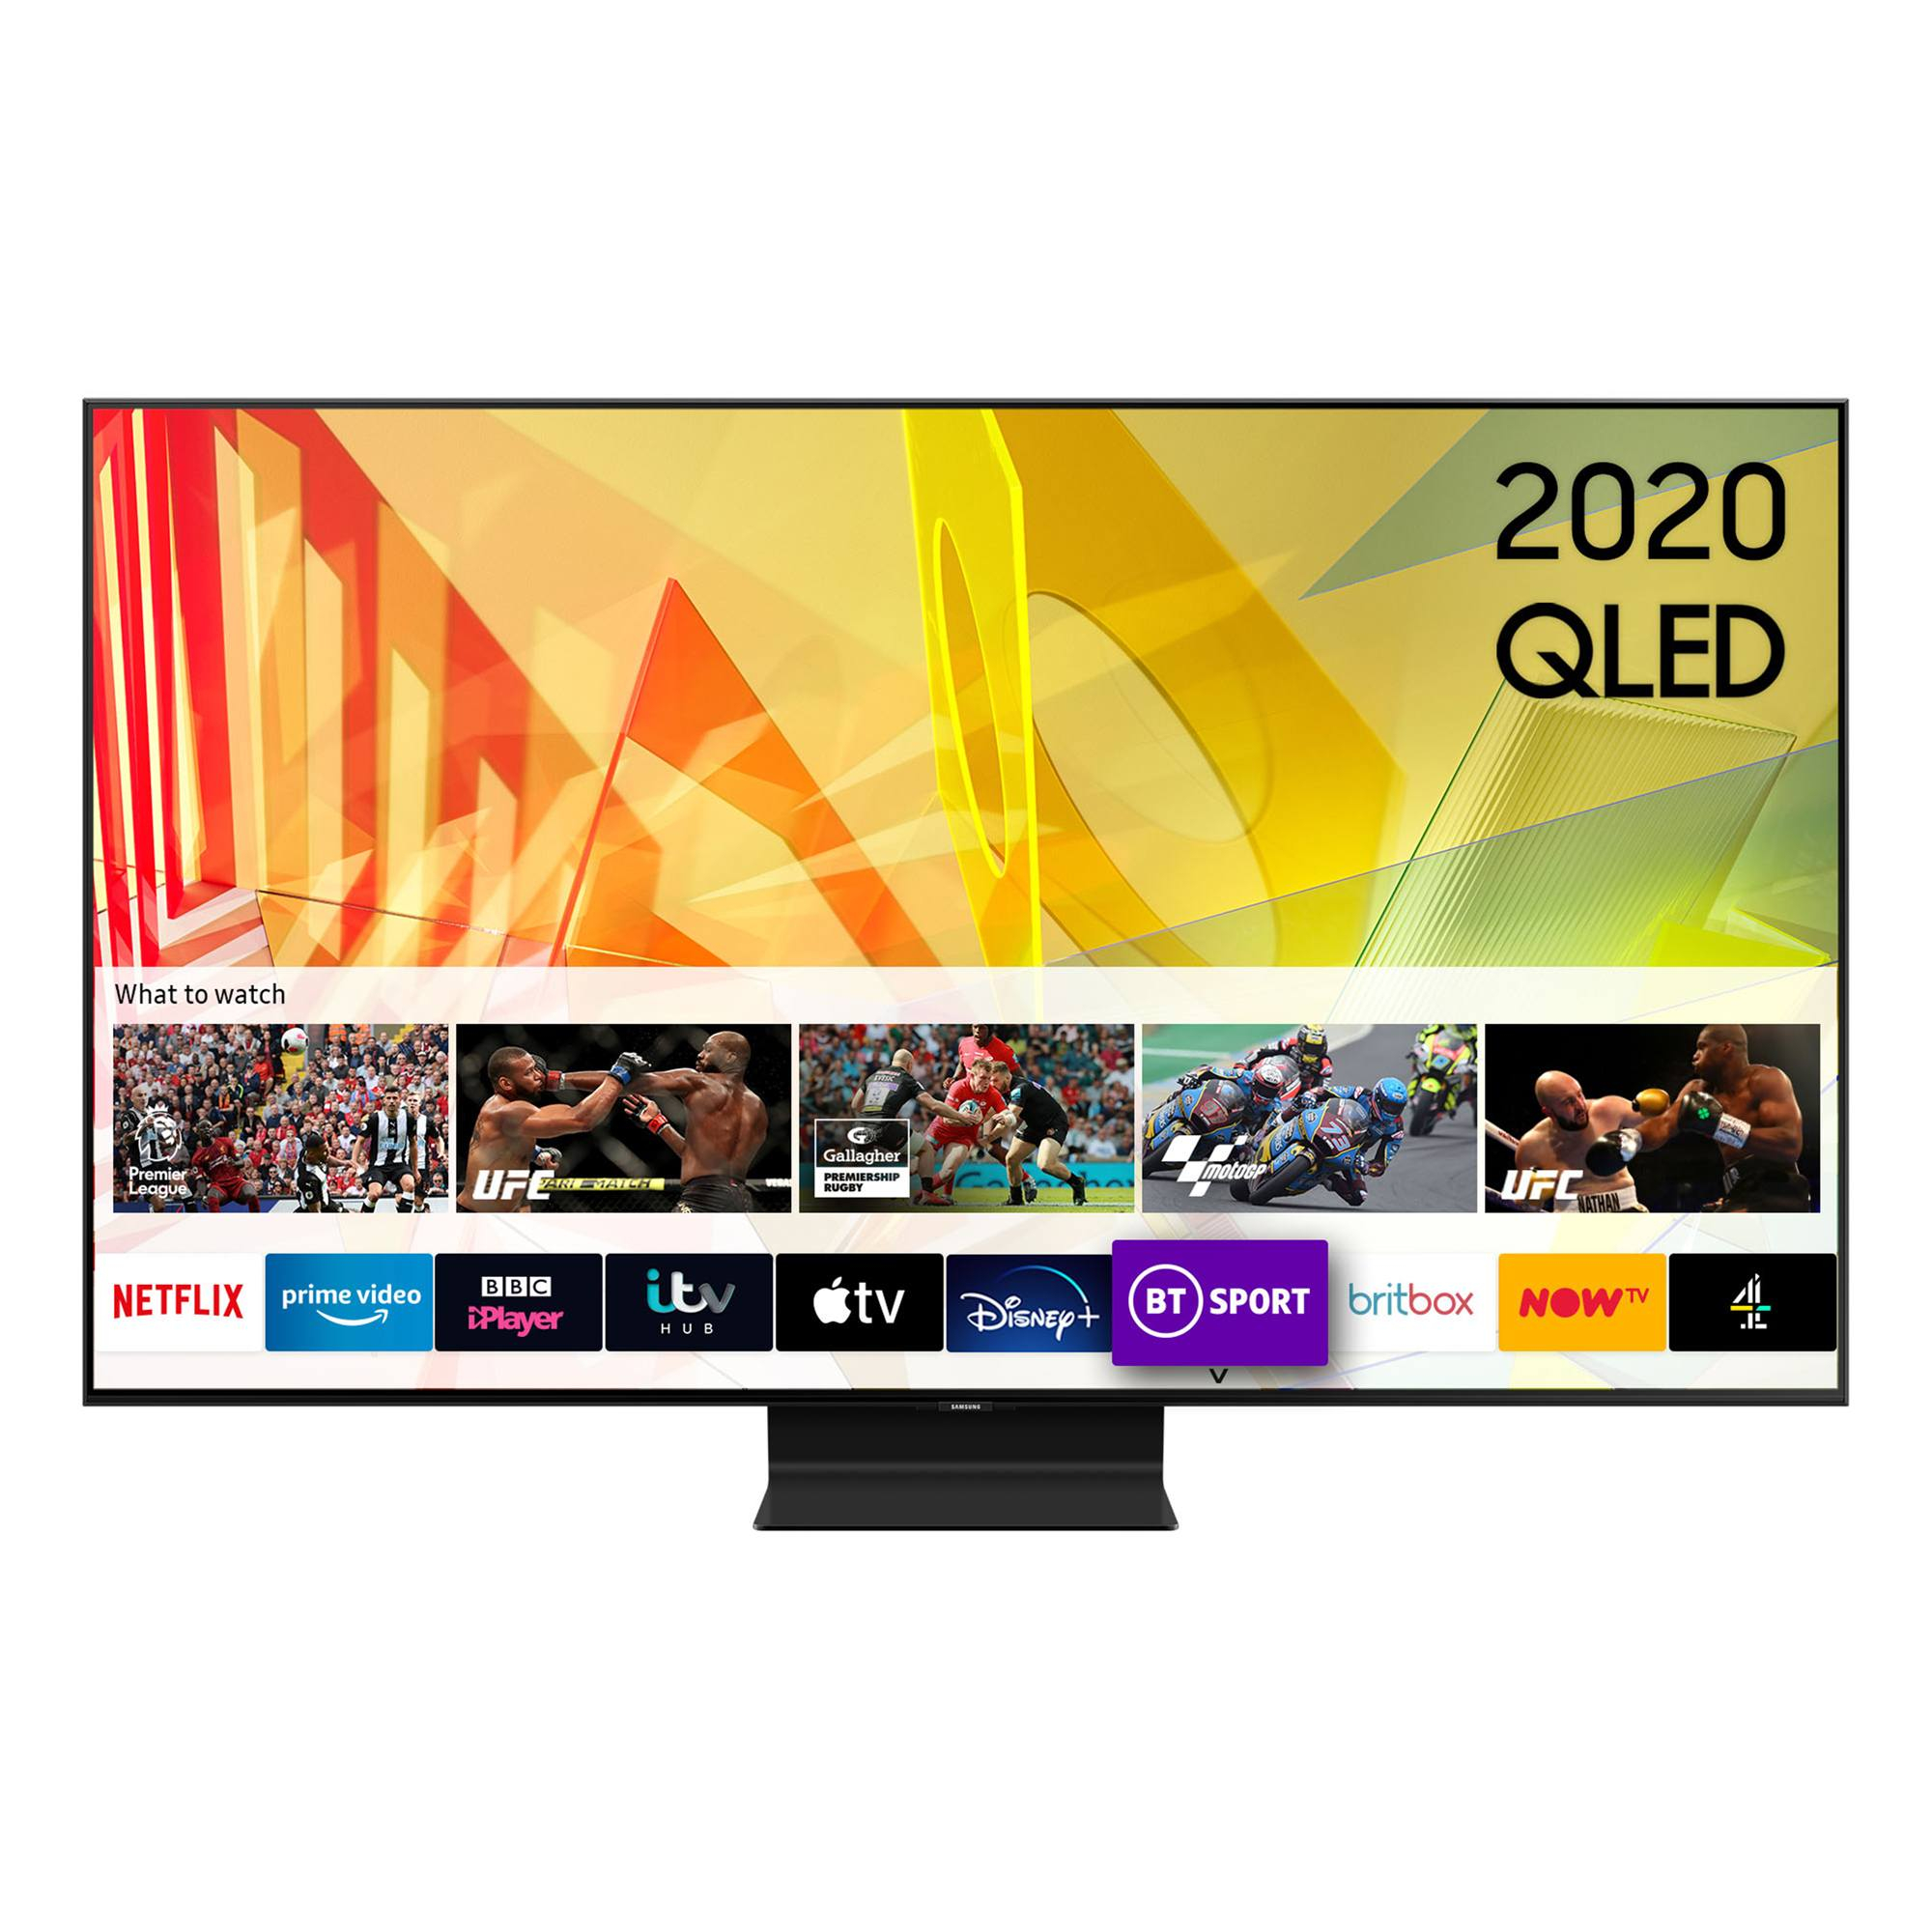 Samsung QE55Q90T (2020) QLED HDR 2000 4K Ultra HD Smart TV, 55 inch TVPlus/Freesat HD, Black ...